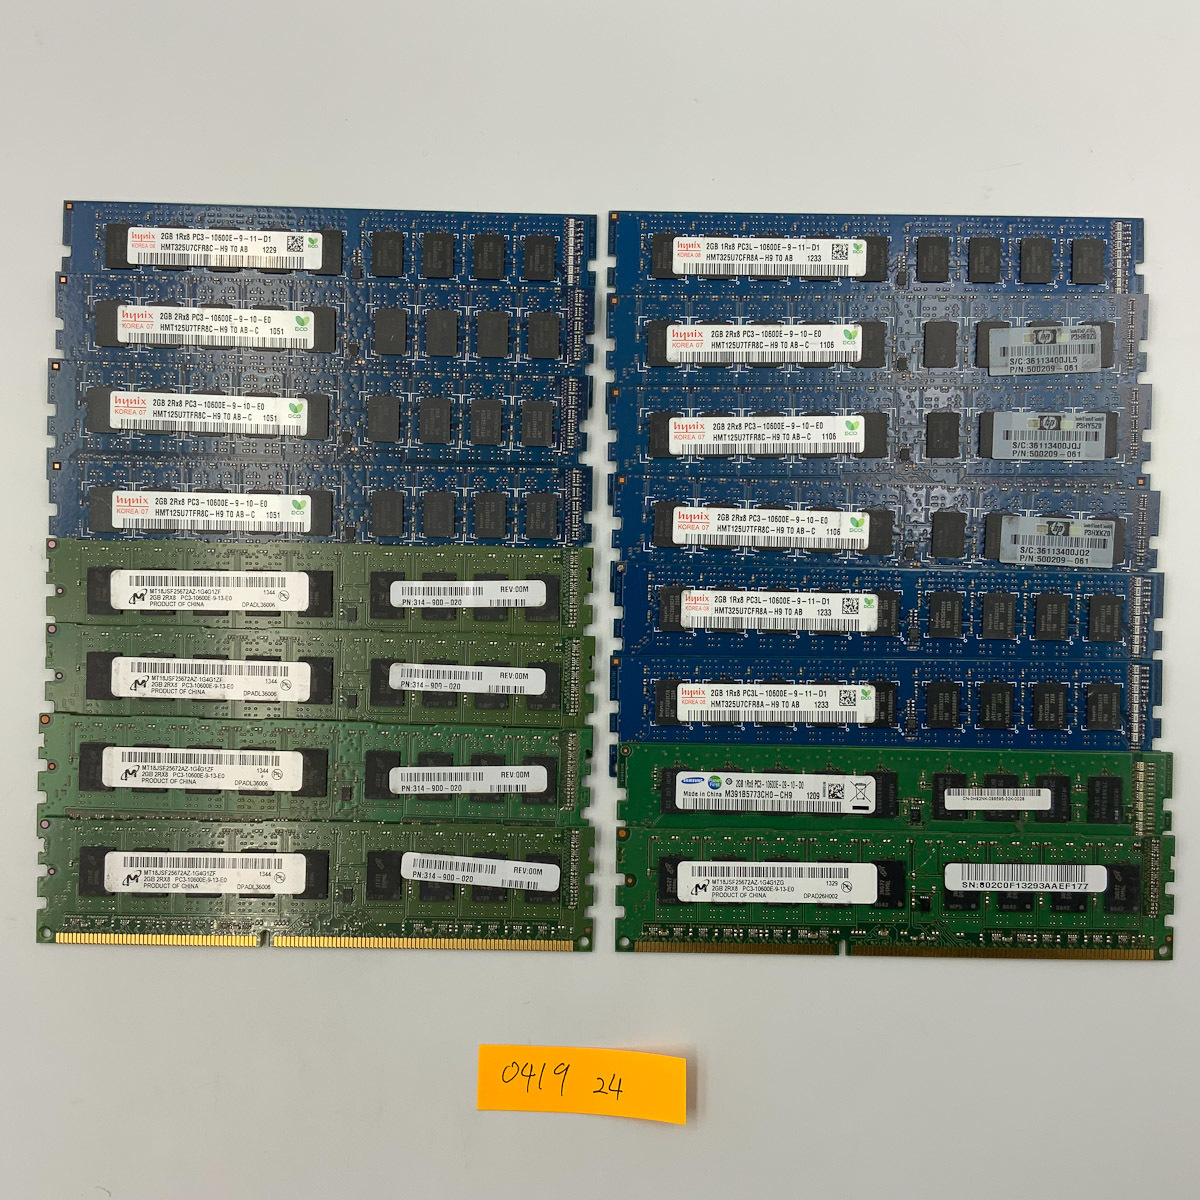 [サーバー用]Hynix等メーカー混在 2G 合計16枚セット メモリ メモリーPC3-10600E PC3L-10600E混在ECC DDR3 1333 0419_24_画像1